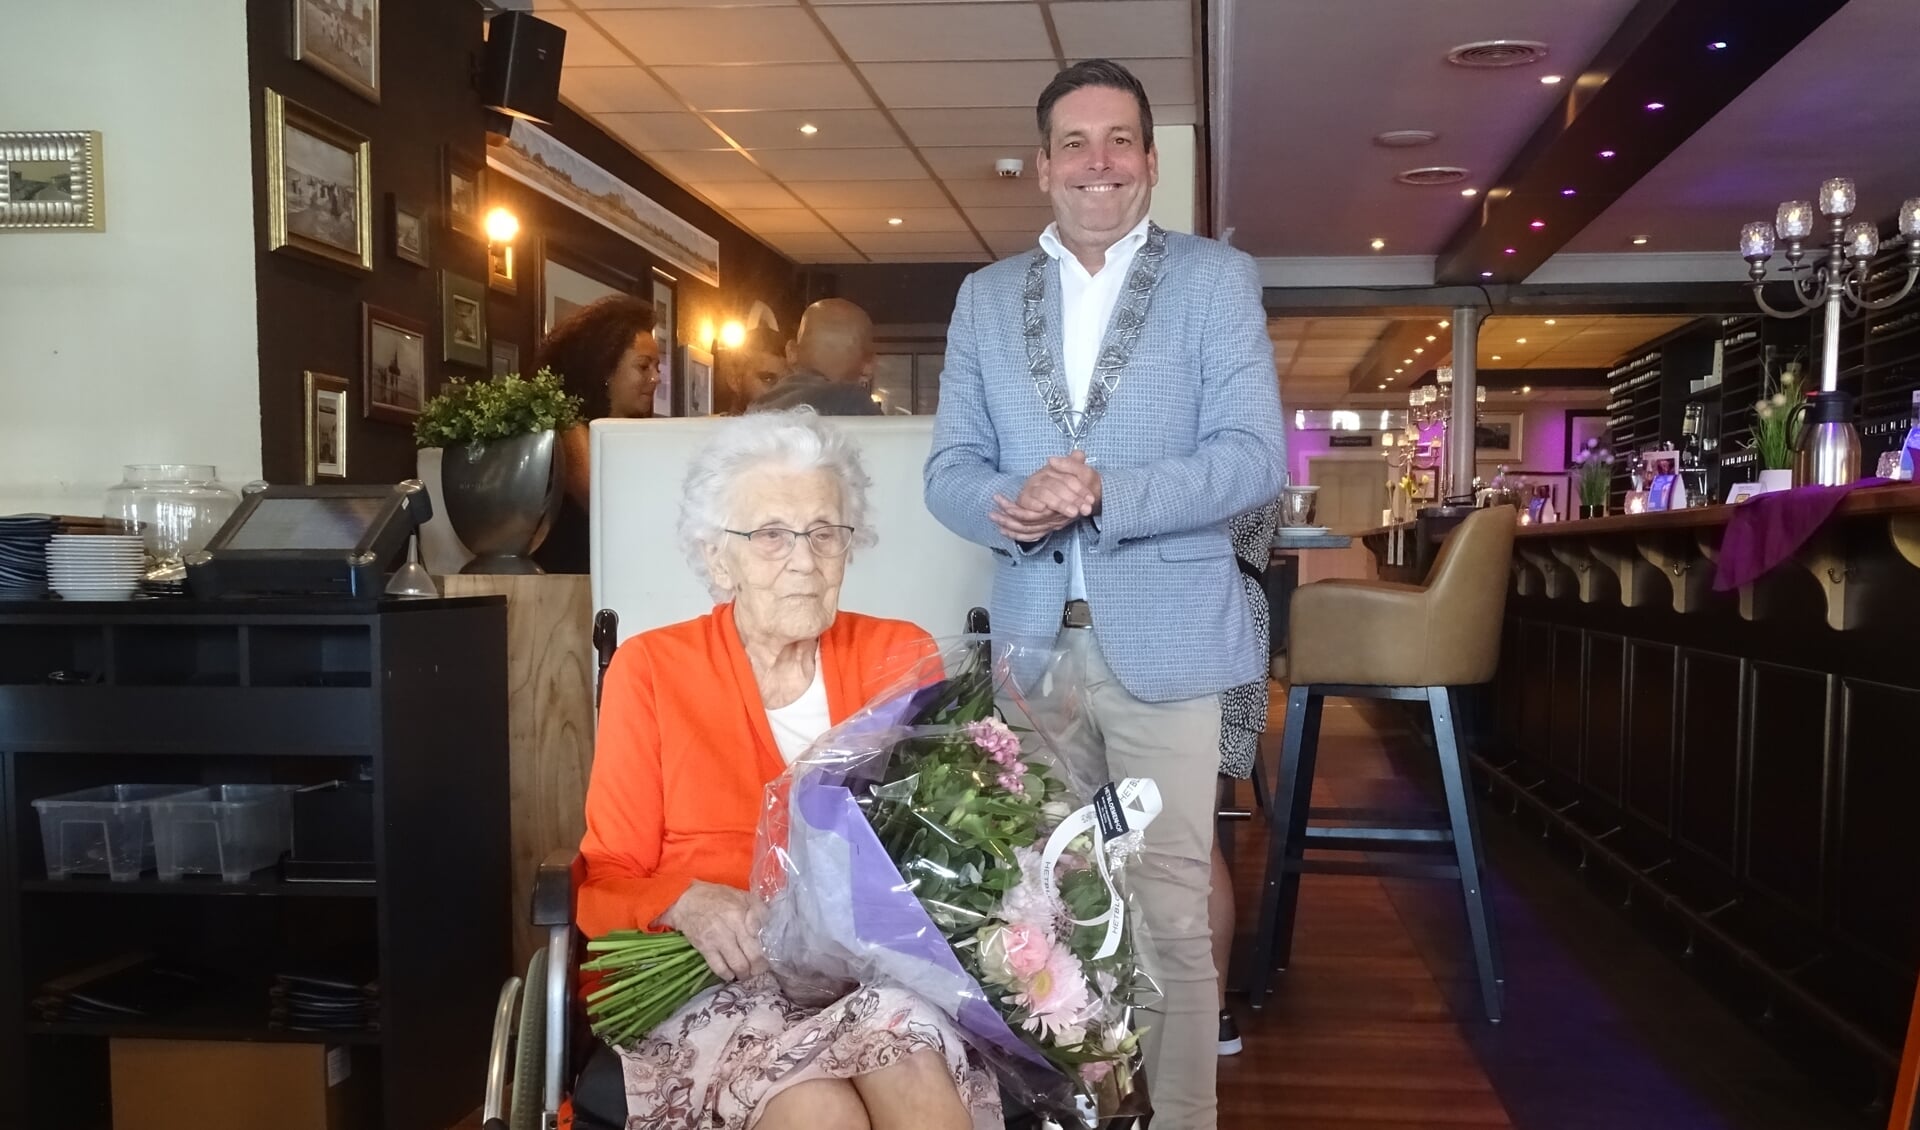 De 100-jarige mevrouw Snaar en 
locoburgemeester Dennis Salman van Noordwijk.